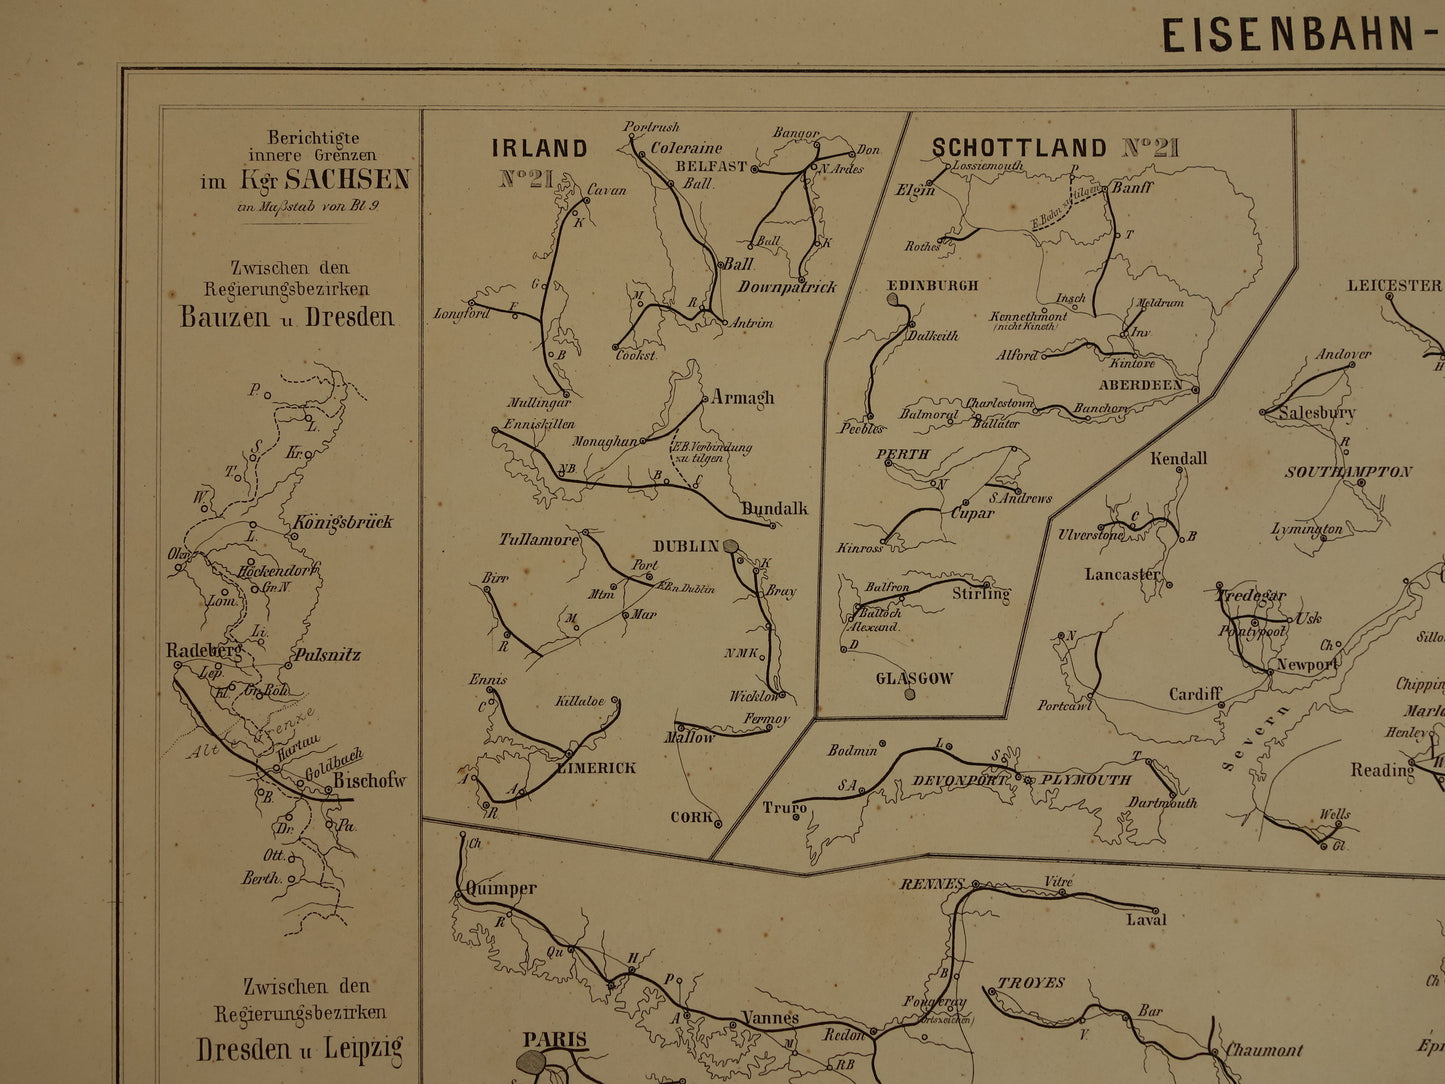 Antieke kaart uit 1860 van 'recente' spoorwegen spoorlijnen in Europa Nederland originele 160+ jaar oude landkaart spoorkaart Rotterdam-Utrecht